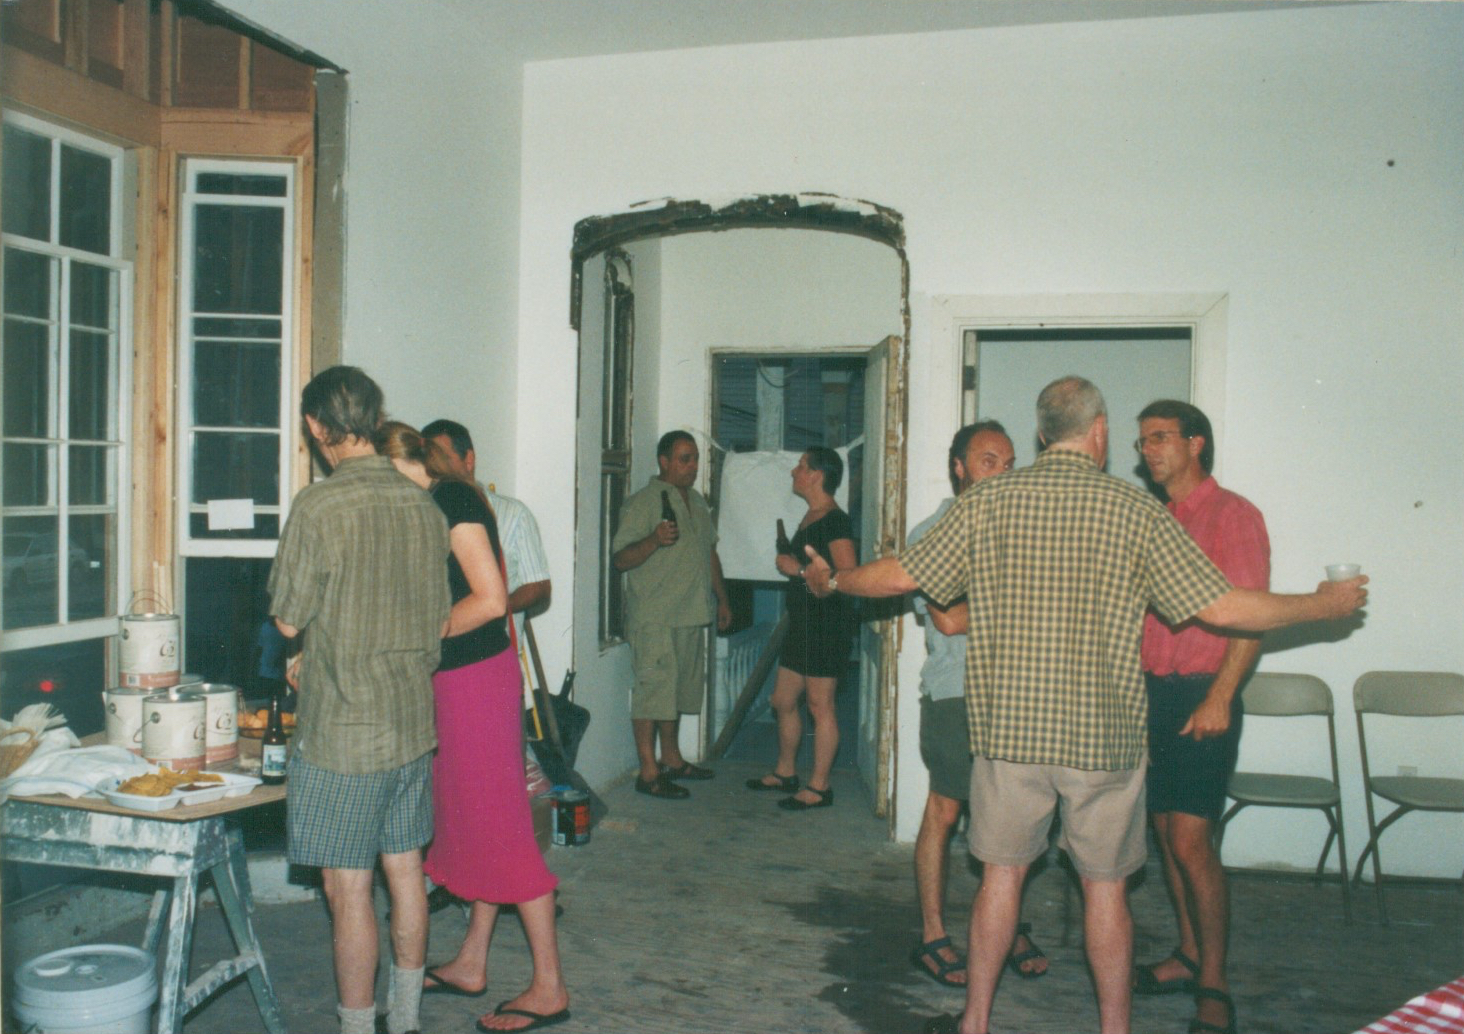  Pre-renovation party, 2002 